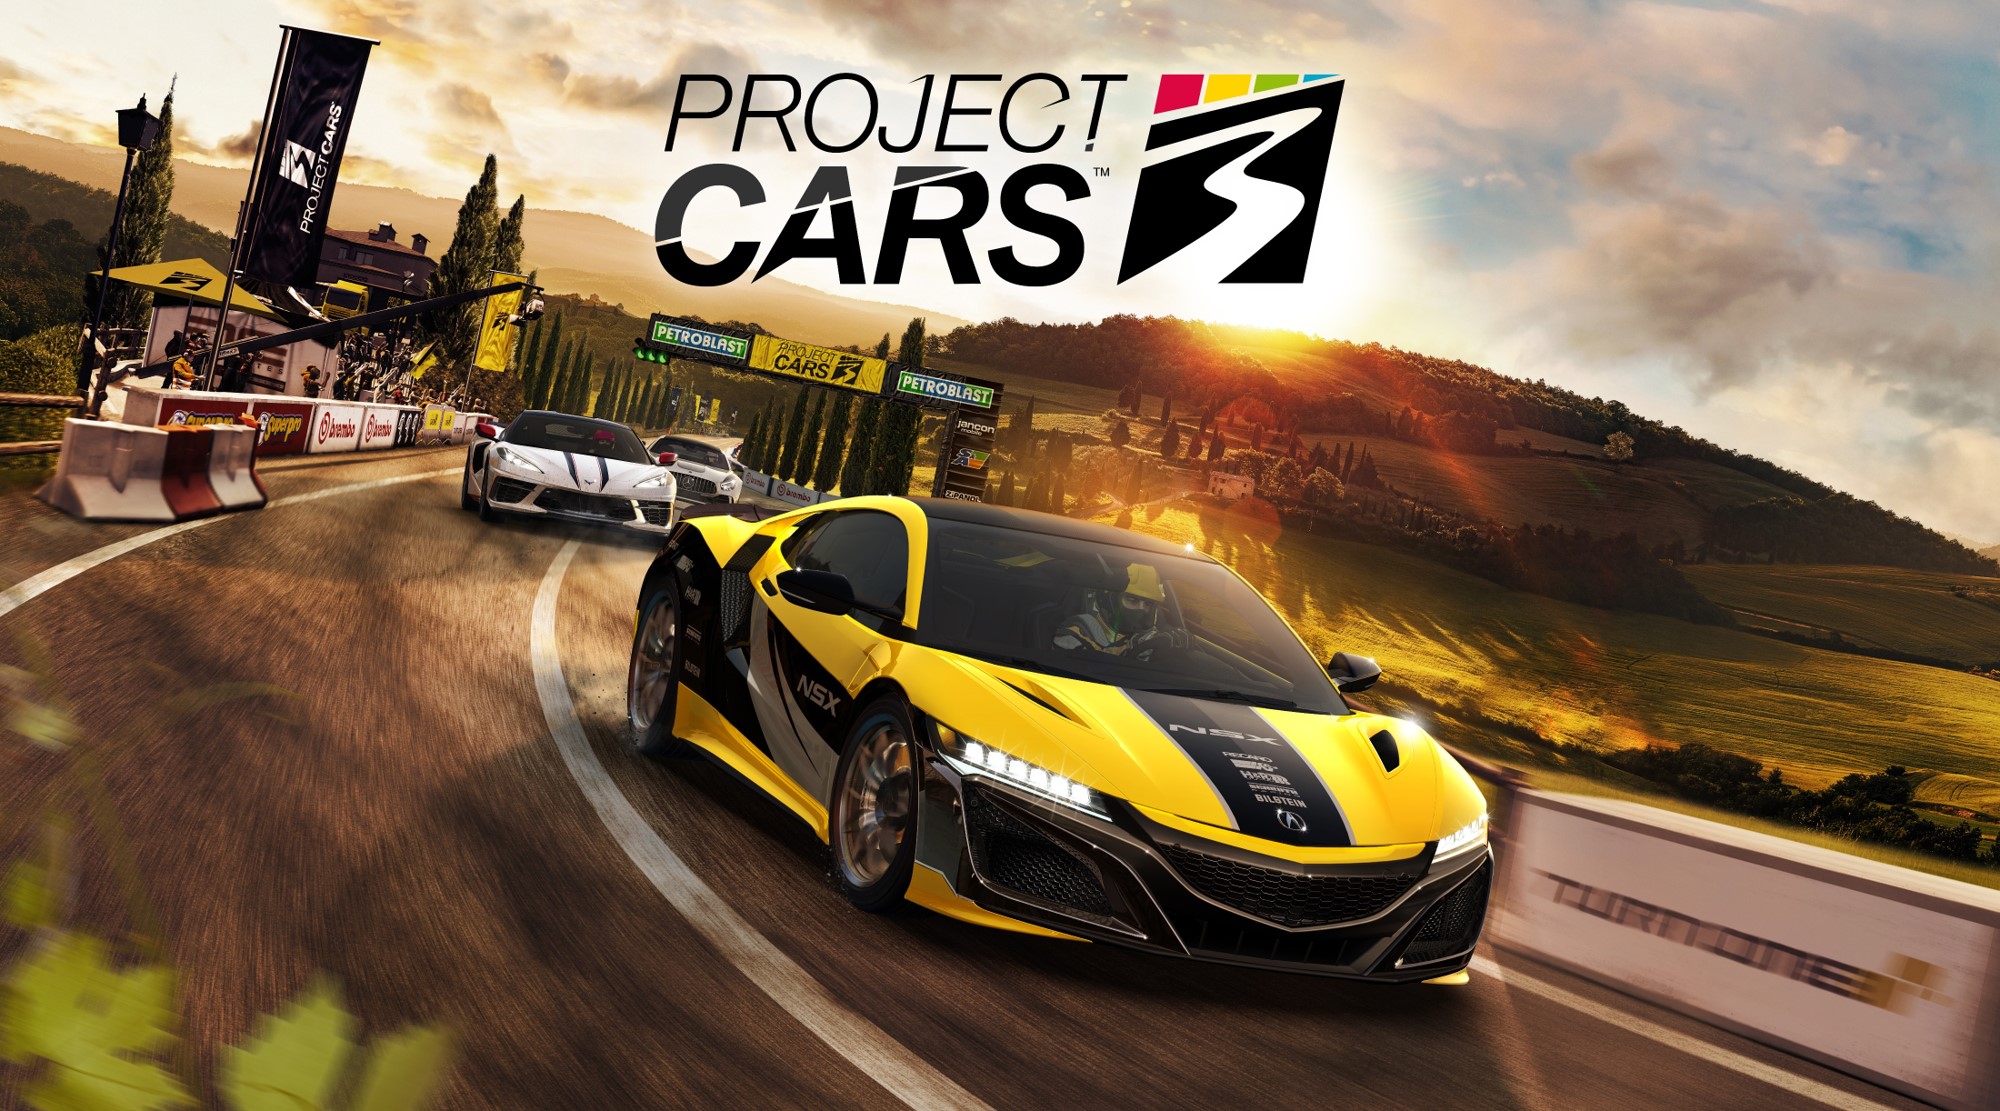 Project Cars 3 発売日決定 キービジュアル公開のお知らせ 株式会社バンダイナムコエンターテインメントのプレスリリース